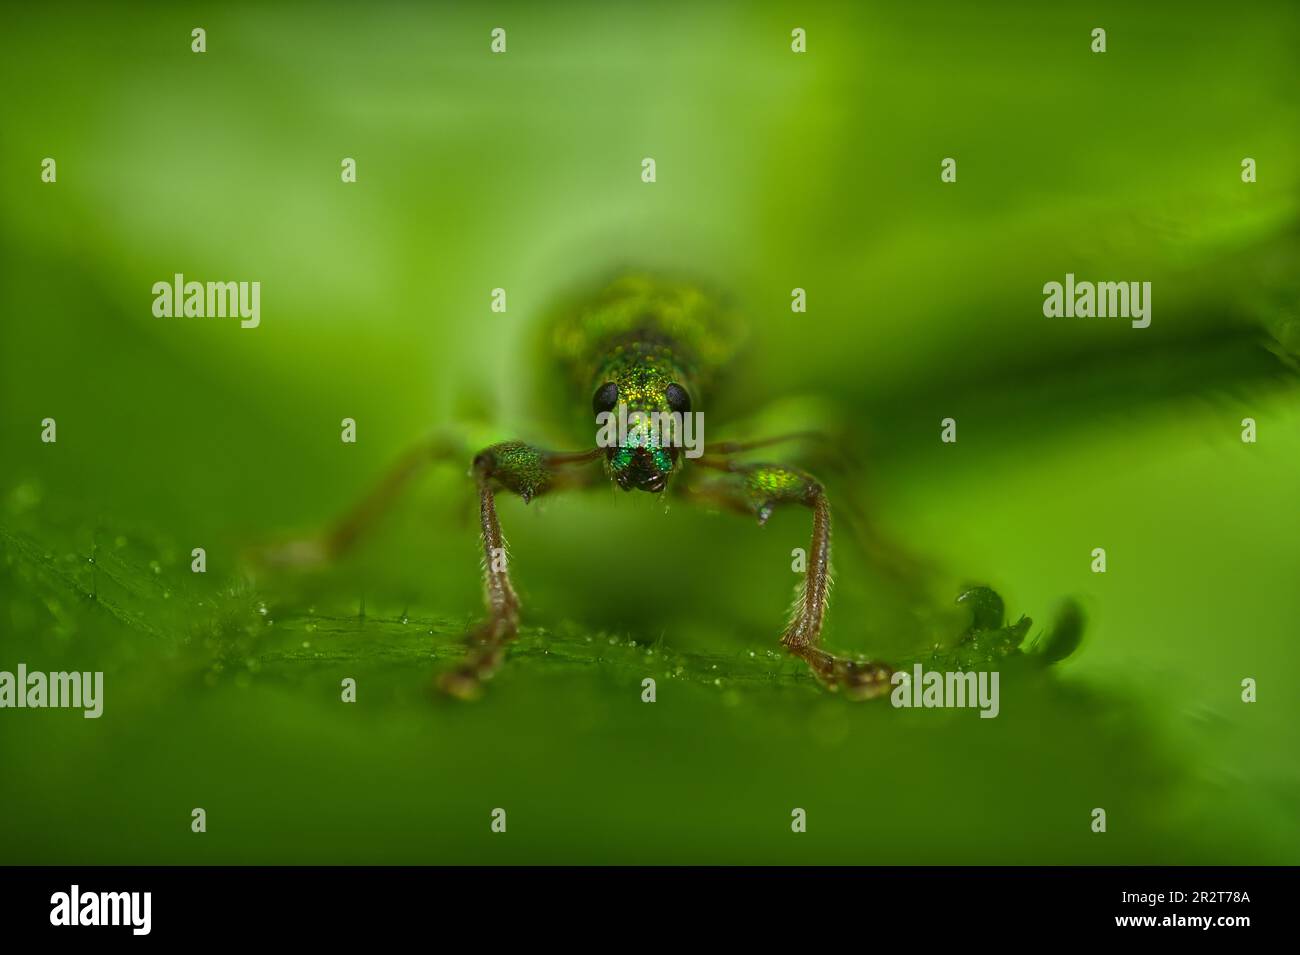 Makro-Vorderansicht eines grünen Scheuerschutzes, der die Kamera vor dem grünen Hintergrund betrachtet Stockfoto